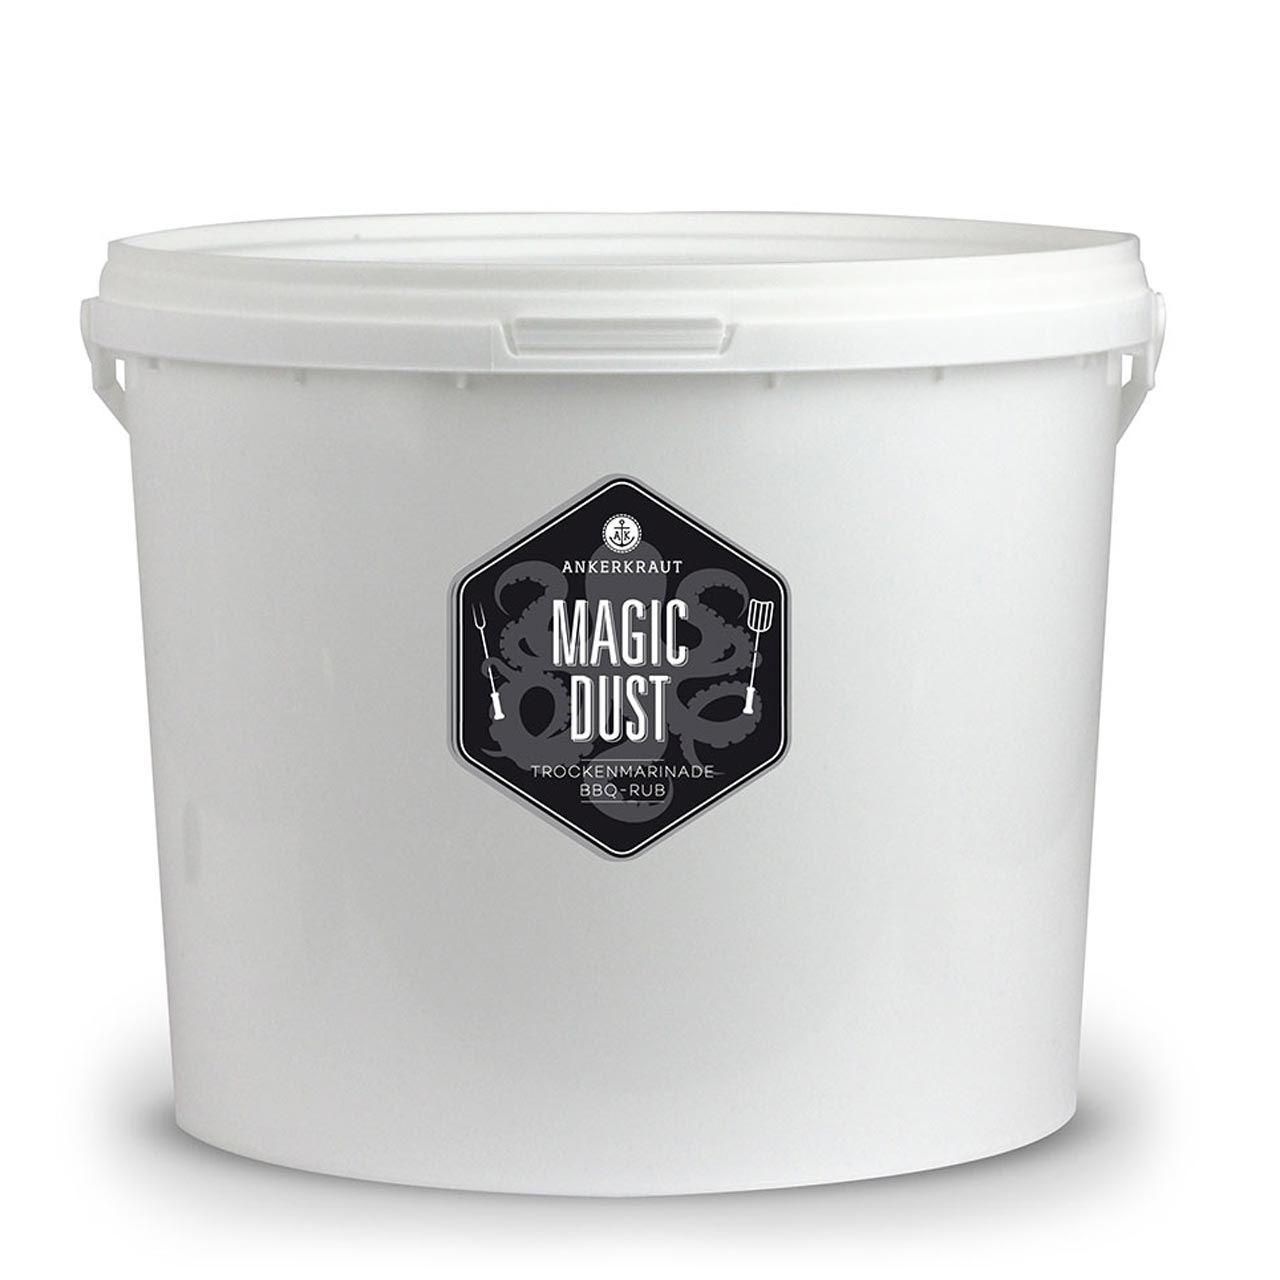 Ankerkraut Magic Dust - 4 kg Eimer